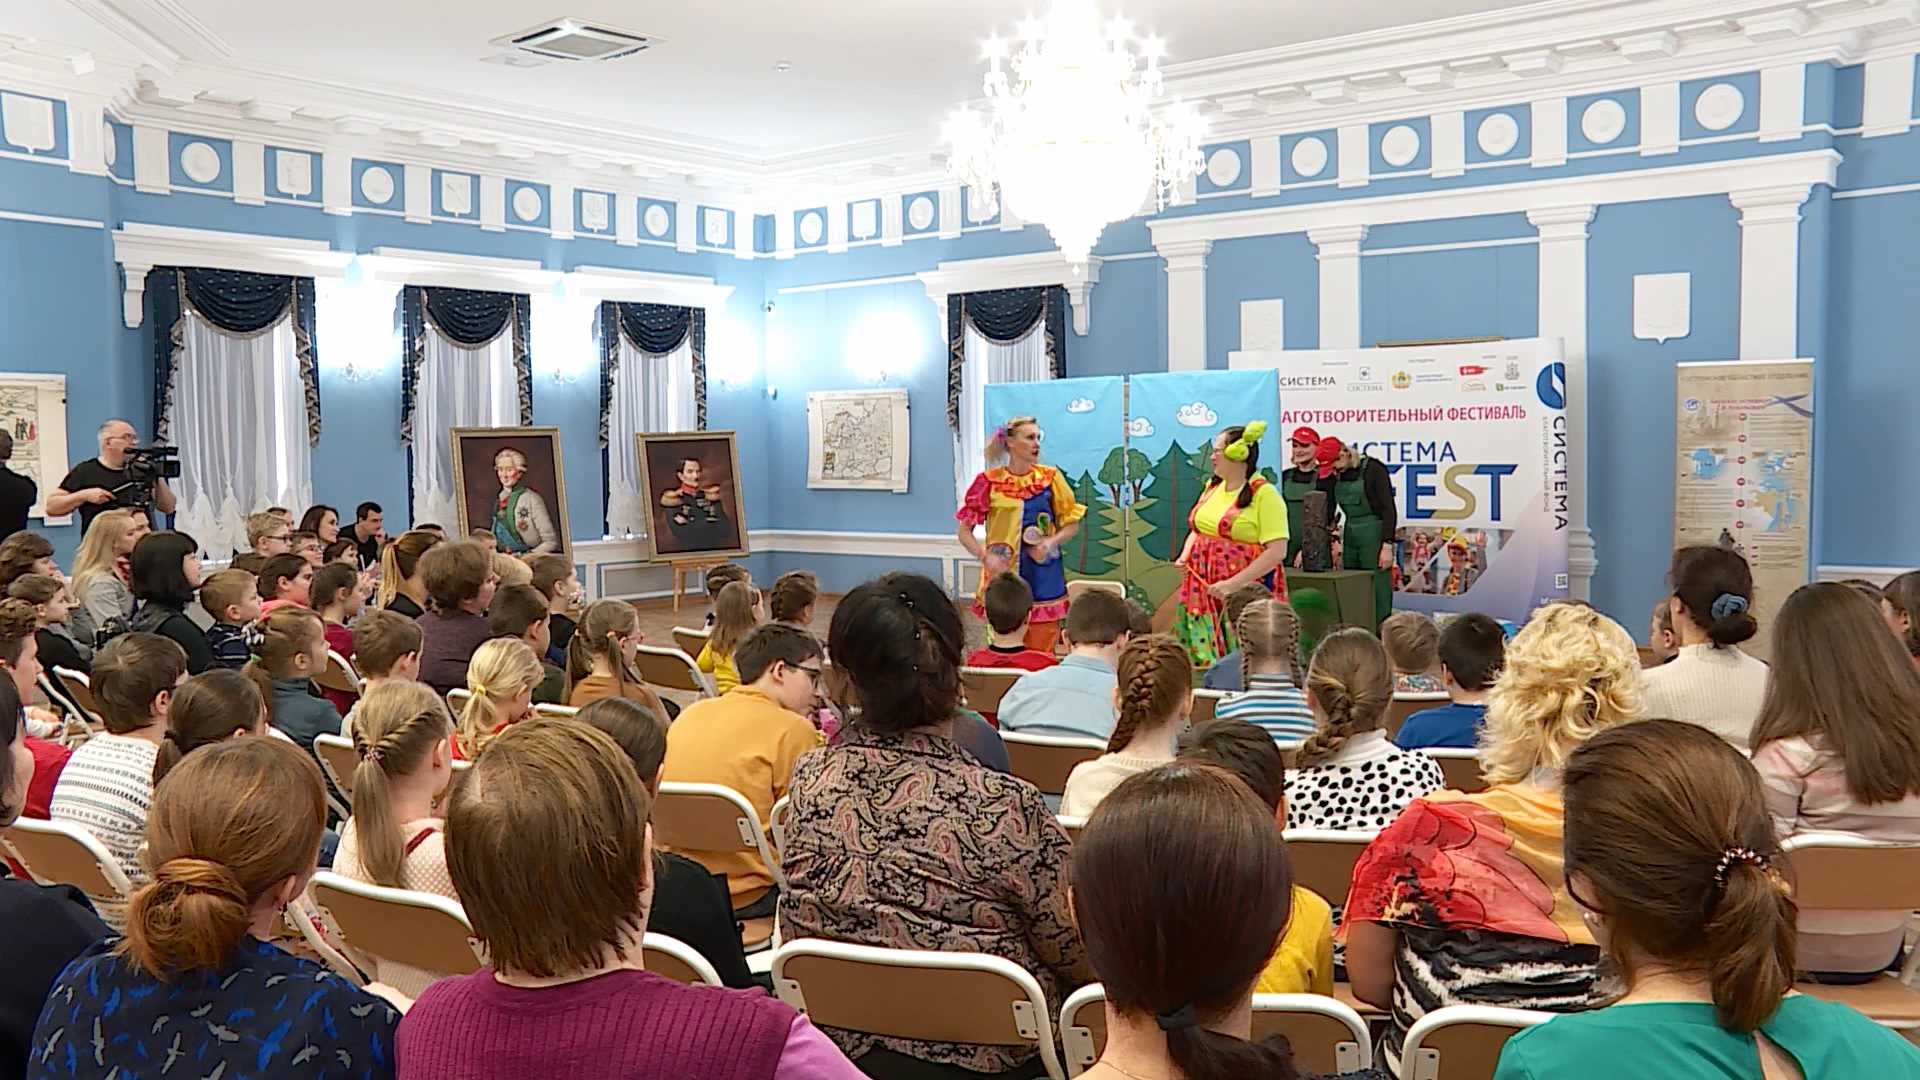 Костромским школьникам преподадут урок кукловождения